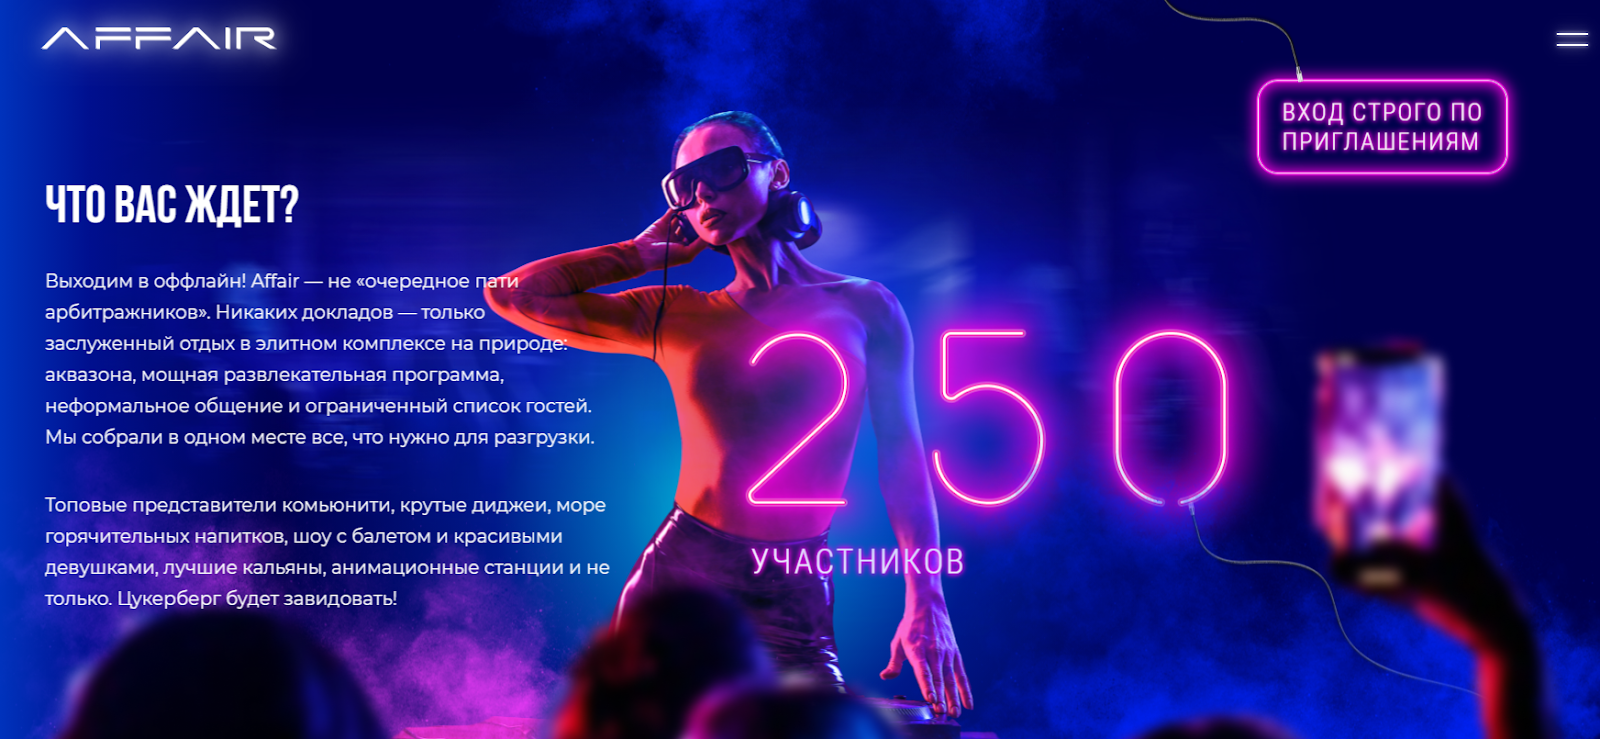 AFFAIR: элитная туса для топовых вебов в Киеве. Твое приглашение внутри.